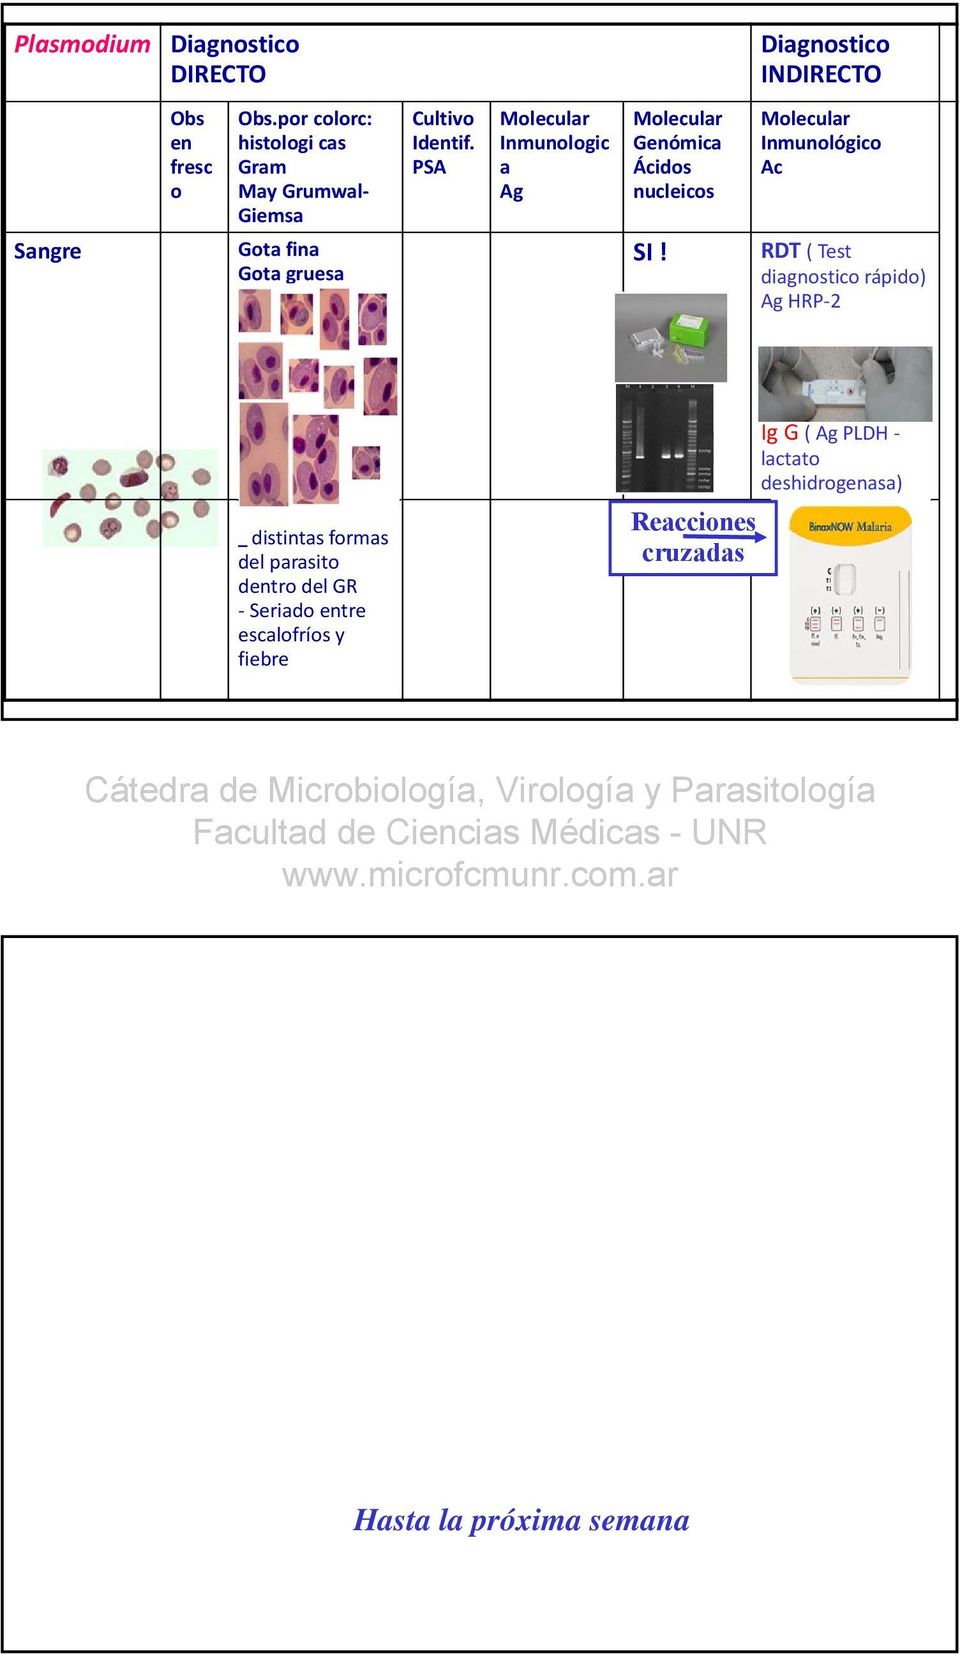 PSA Inmunologic a Ag Genómica Ácidos nucleicos SI!